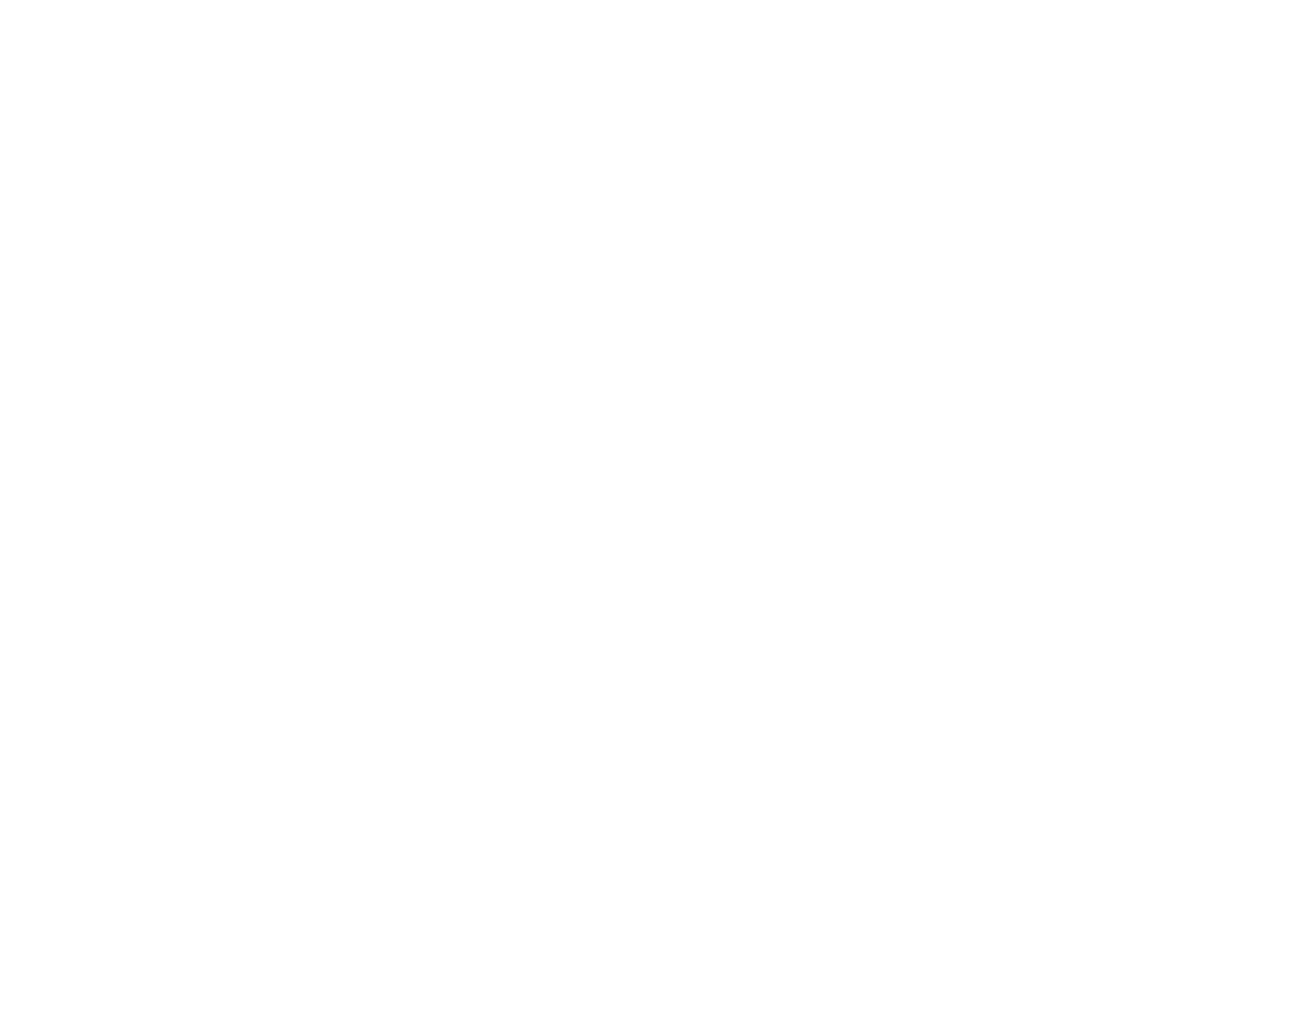 Orion Corporation logo pour fonds sombres (PNG transparent)